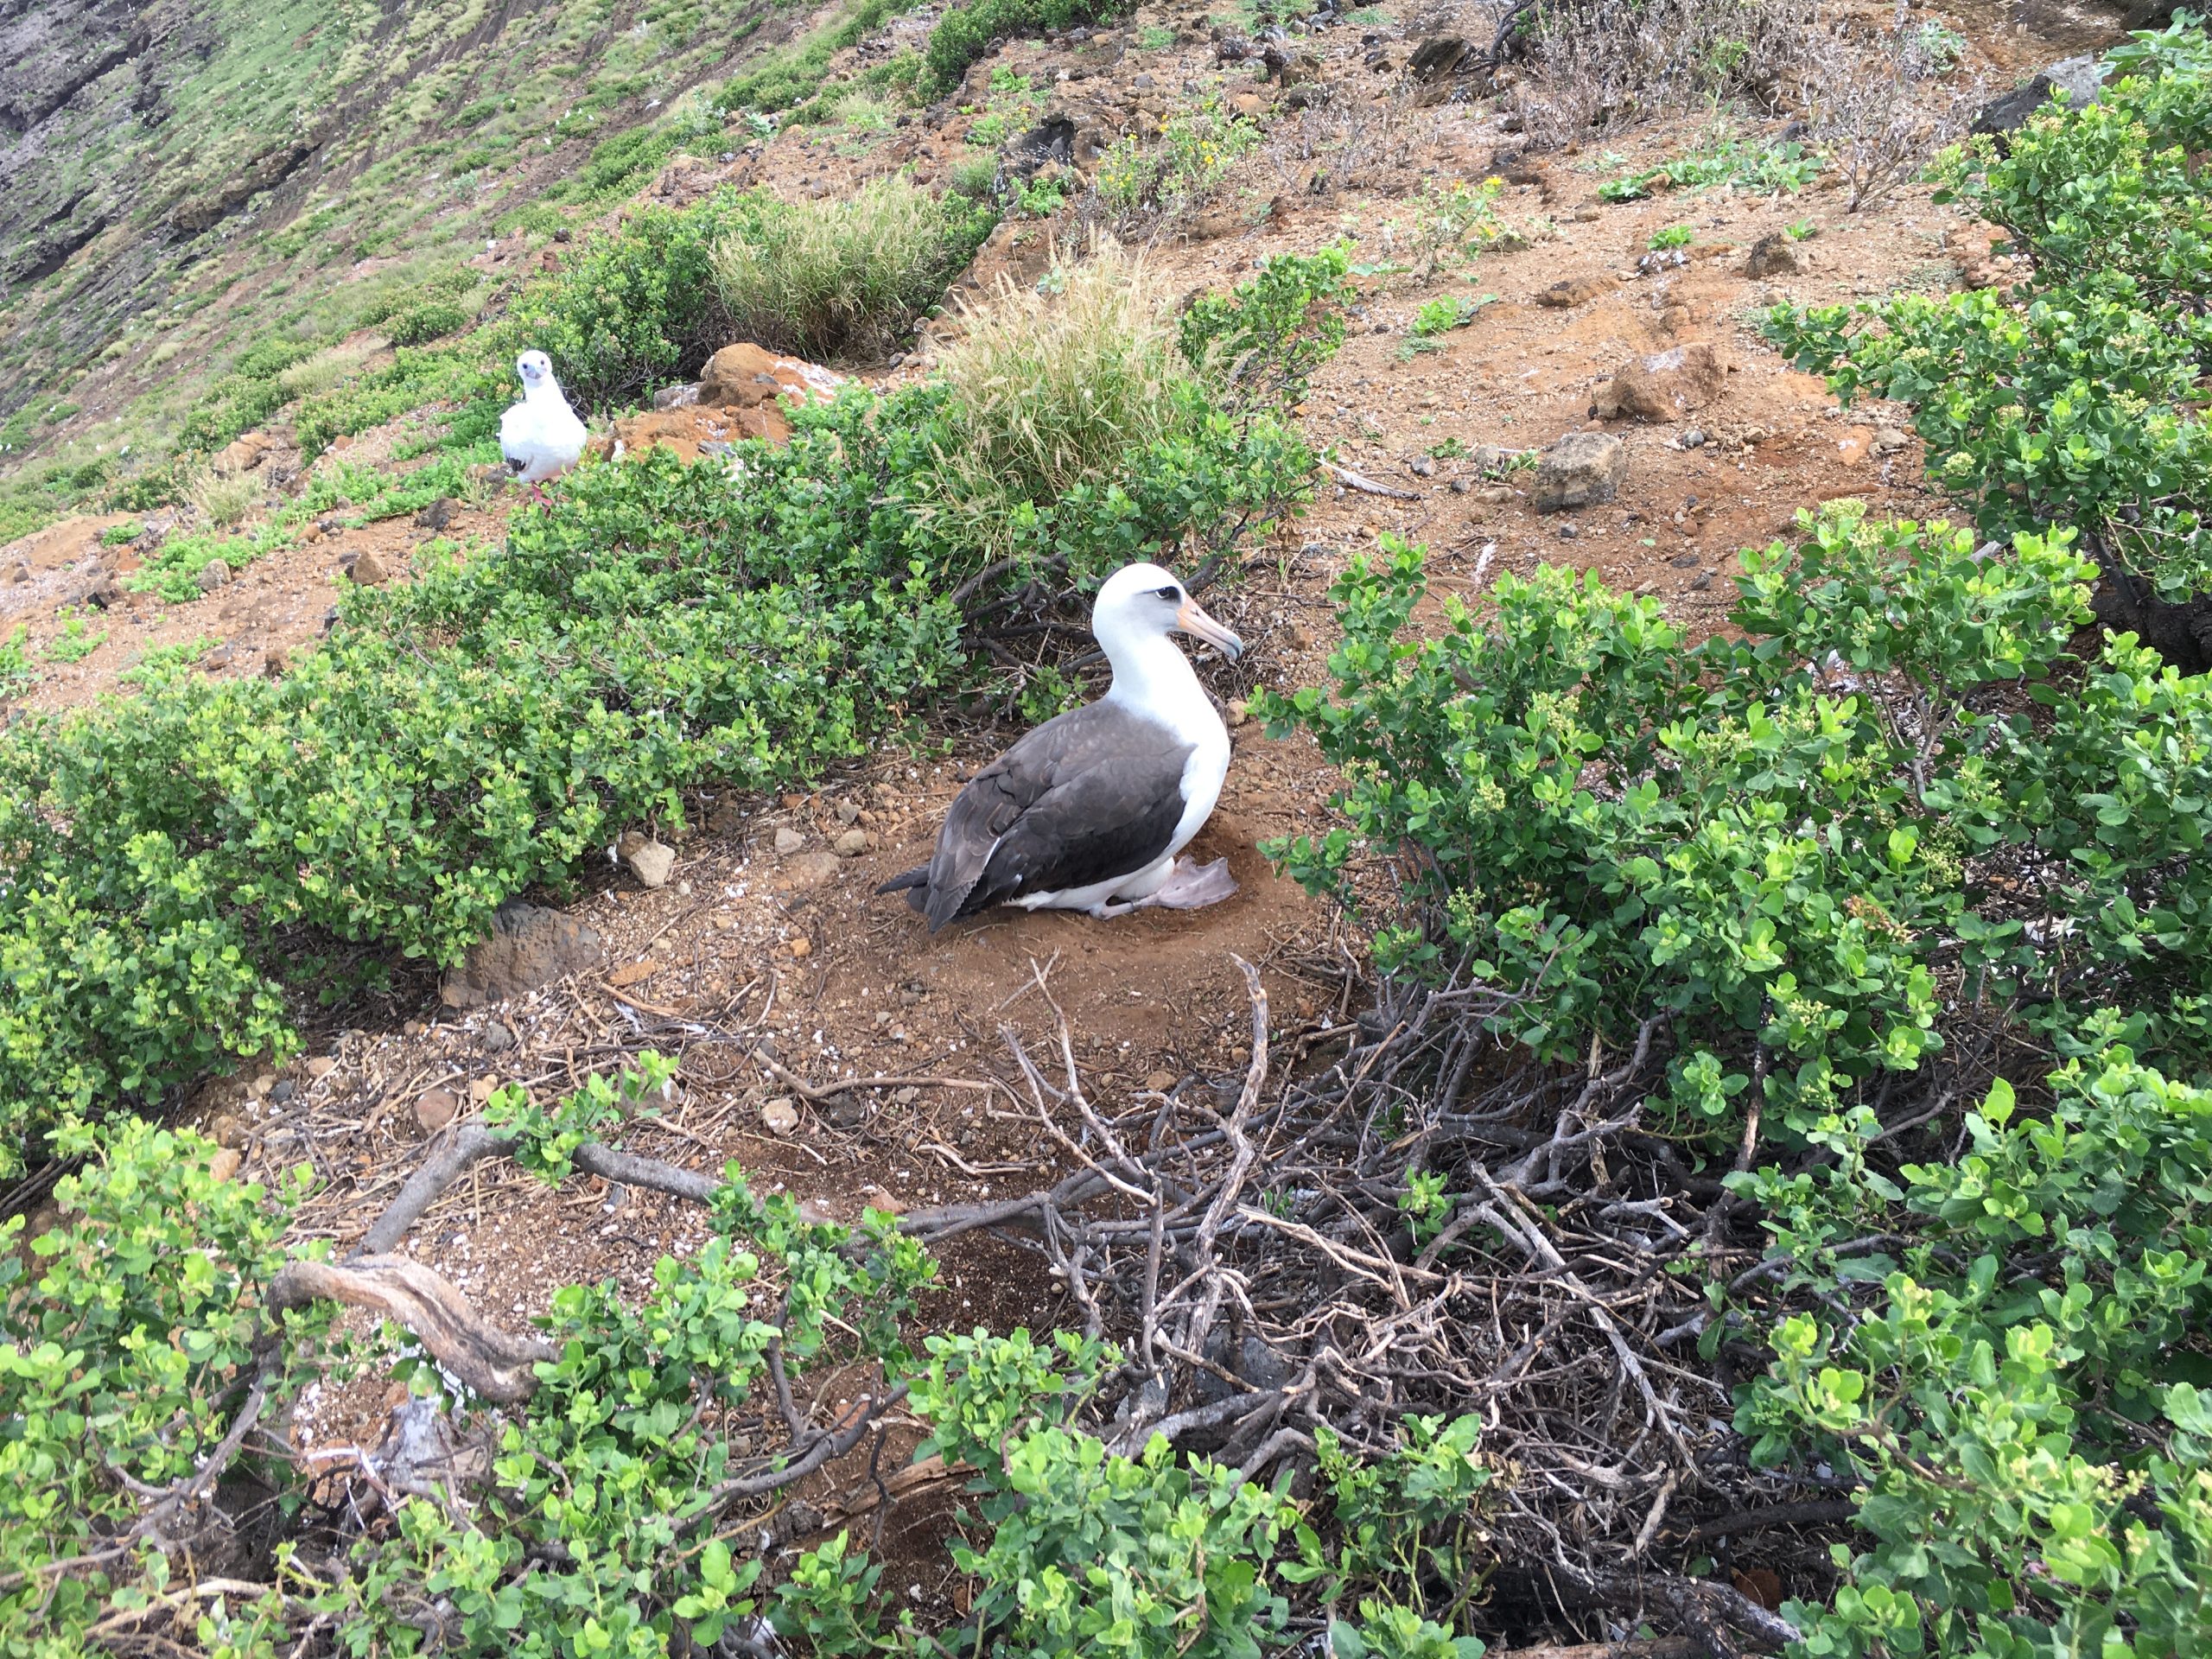 Laysan albatross incubating an egg.